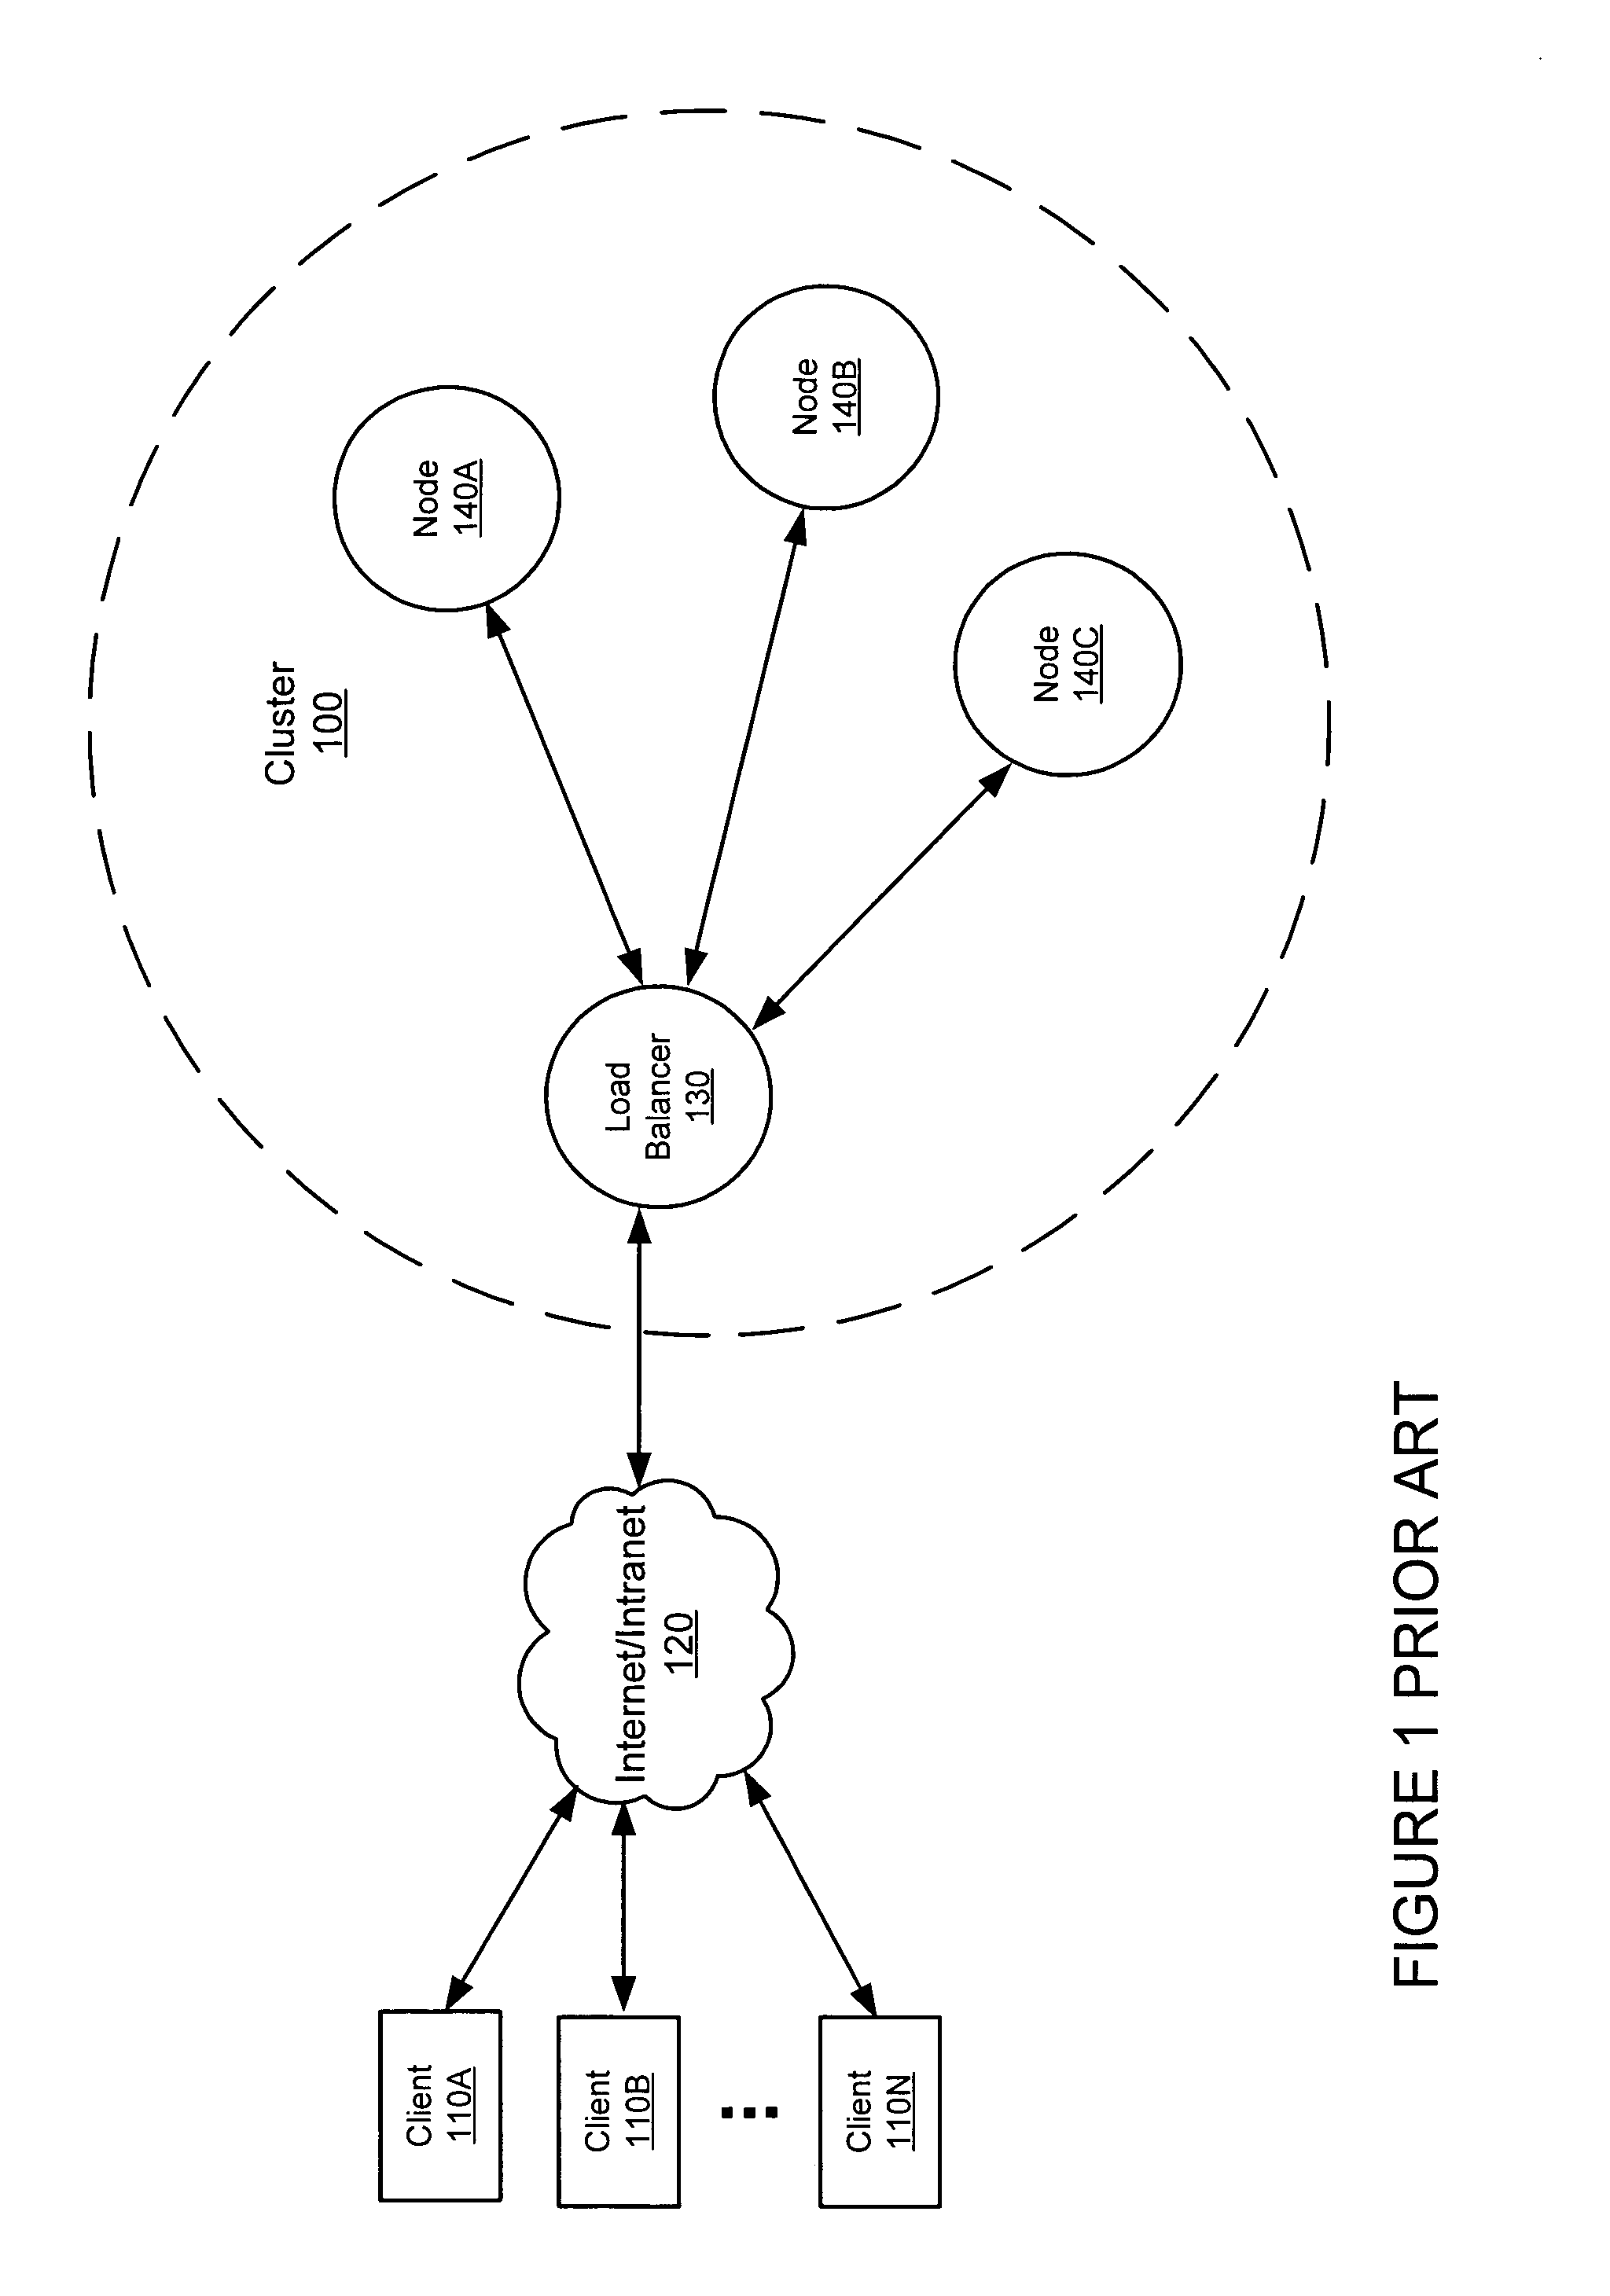 Load-balancing framework for a cluster